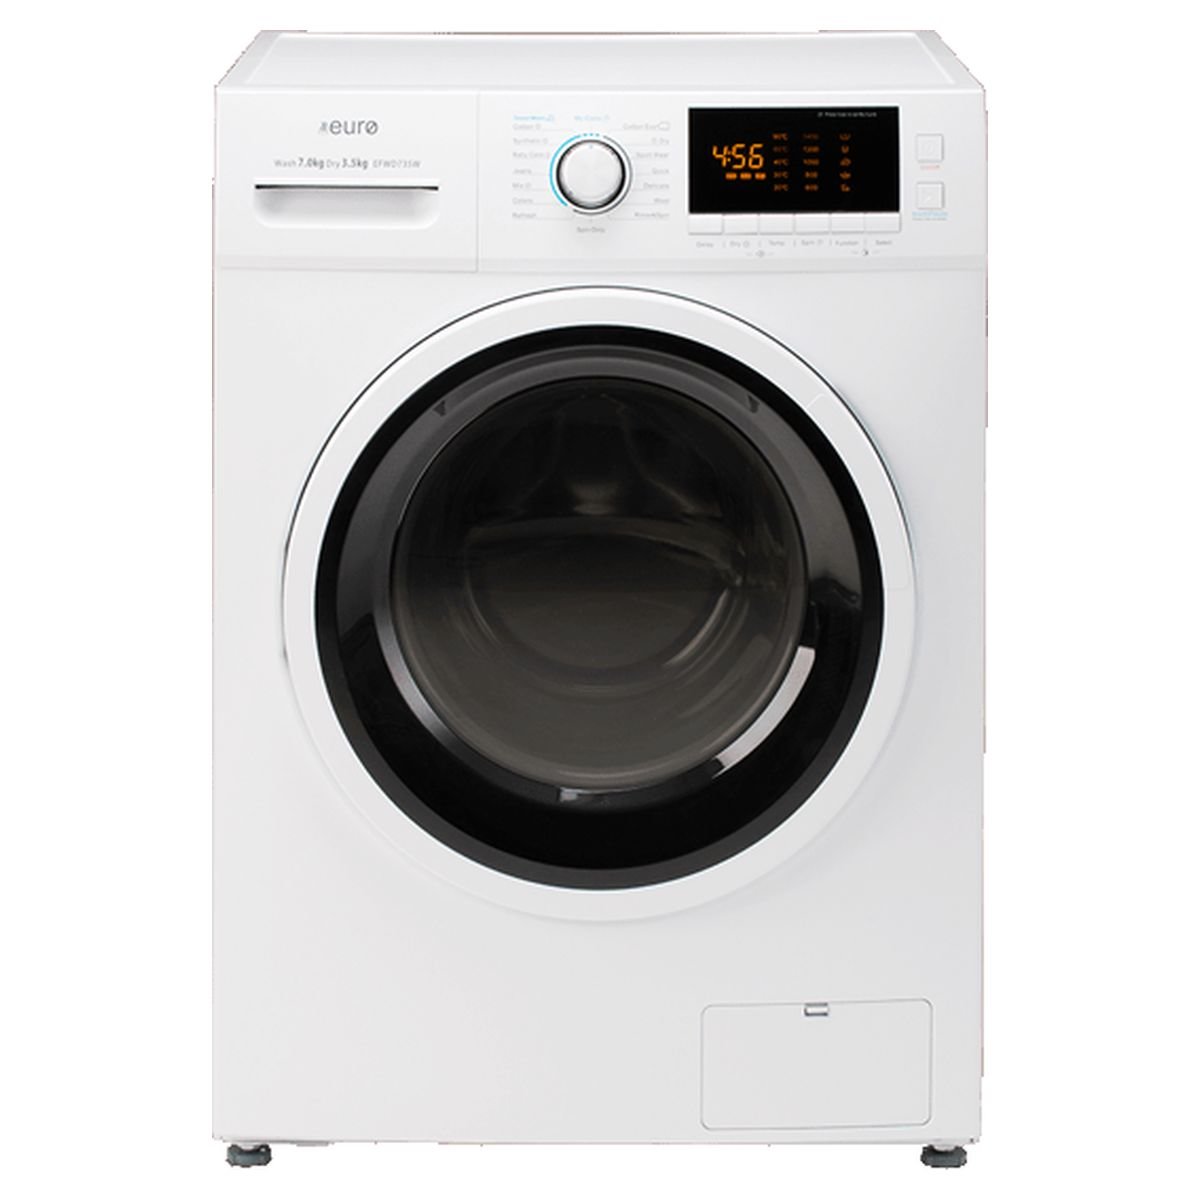 ?????? ?? ? 7Kg - Wf71 F5e0q4 W Samsung 7kg Ecobubble A 1400 Rpm Washing Machine Amazon De Large Appliances : Zapewniamy wszechstronny, bezpieczny i radosny rozwój wszystkim naszym wychowankom.